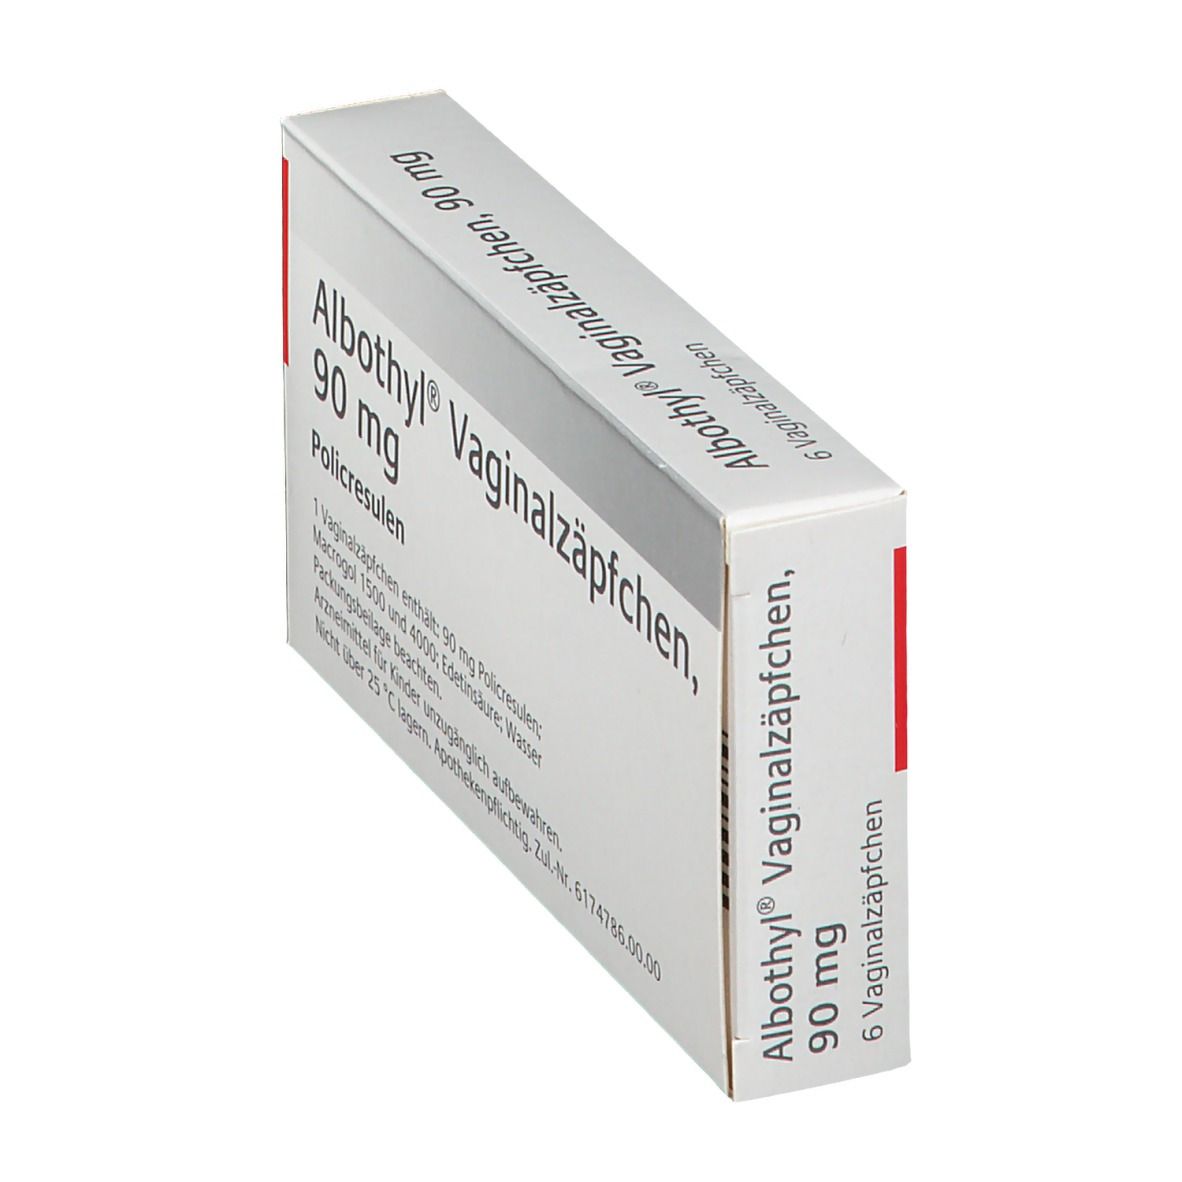 Albothyl® Vaginalzäpfchen